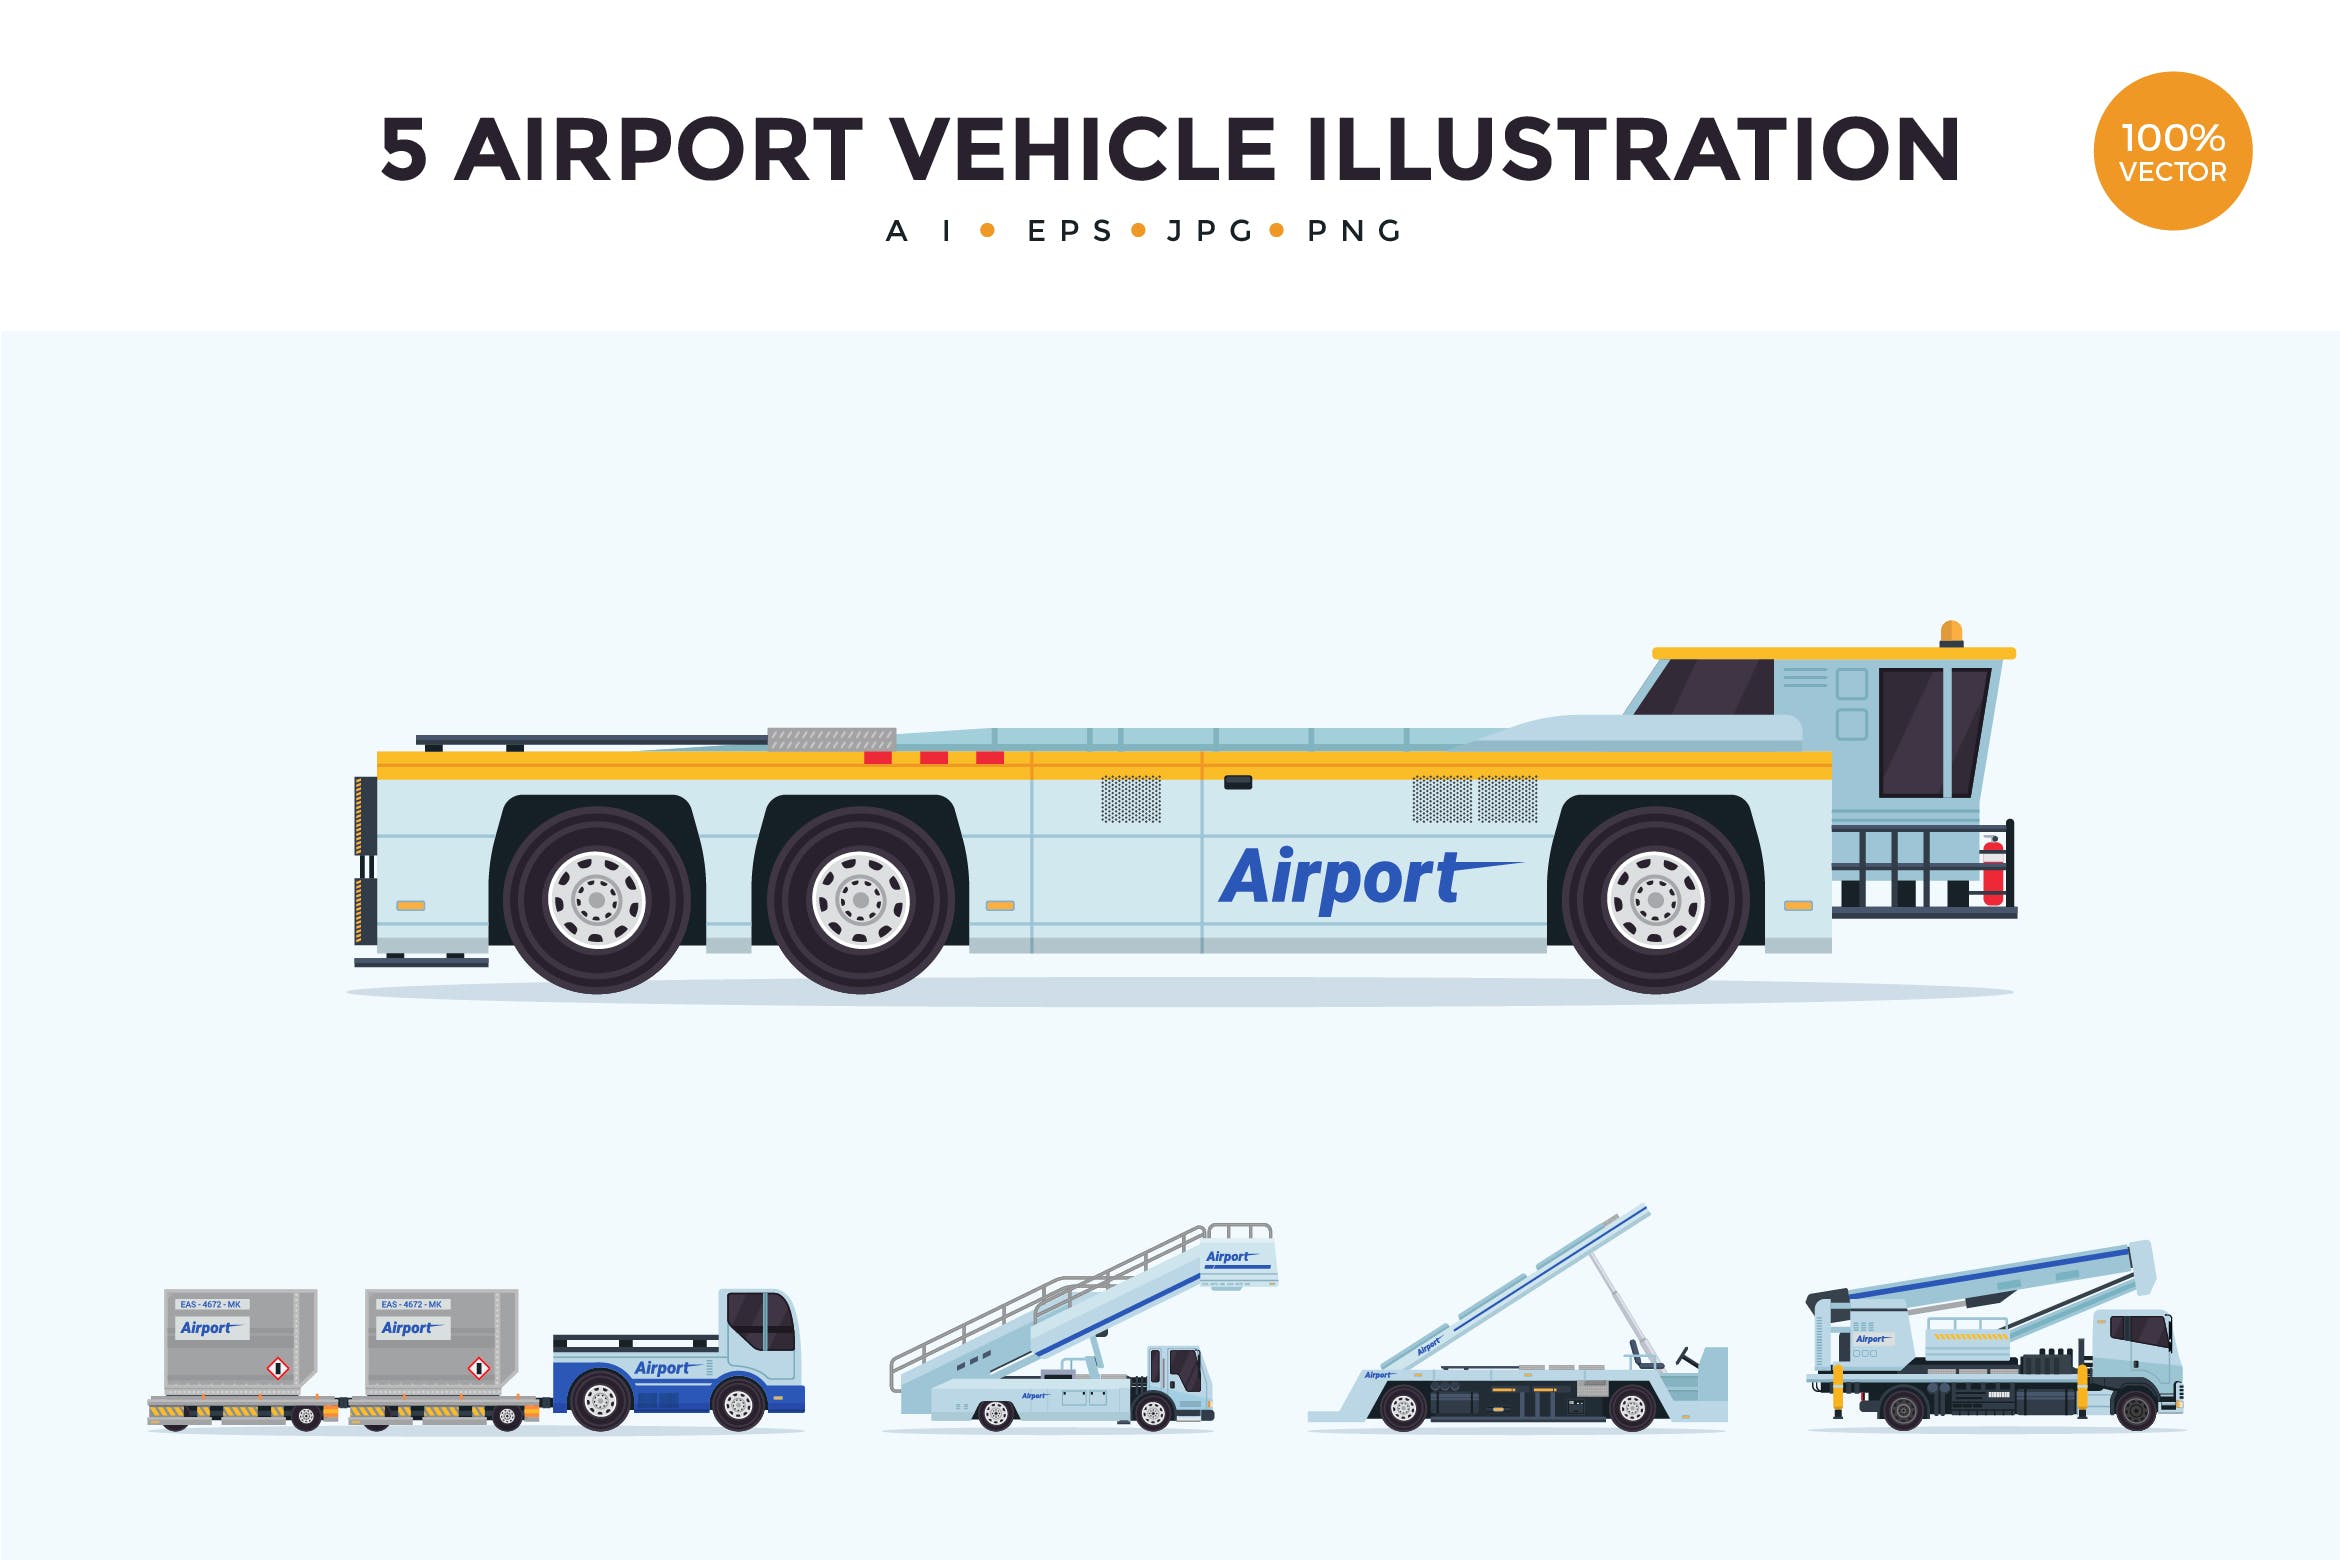 5个机场维护车辆矢量图形素材v2 5 Air Vehicle Maintenance Illustration Set 2插图